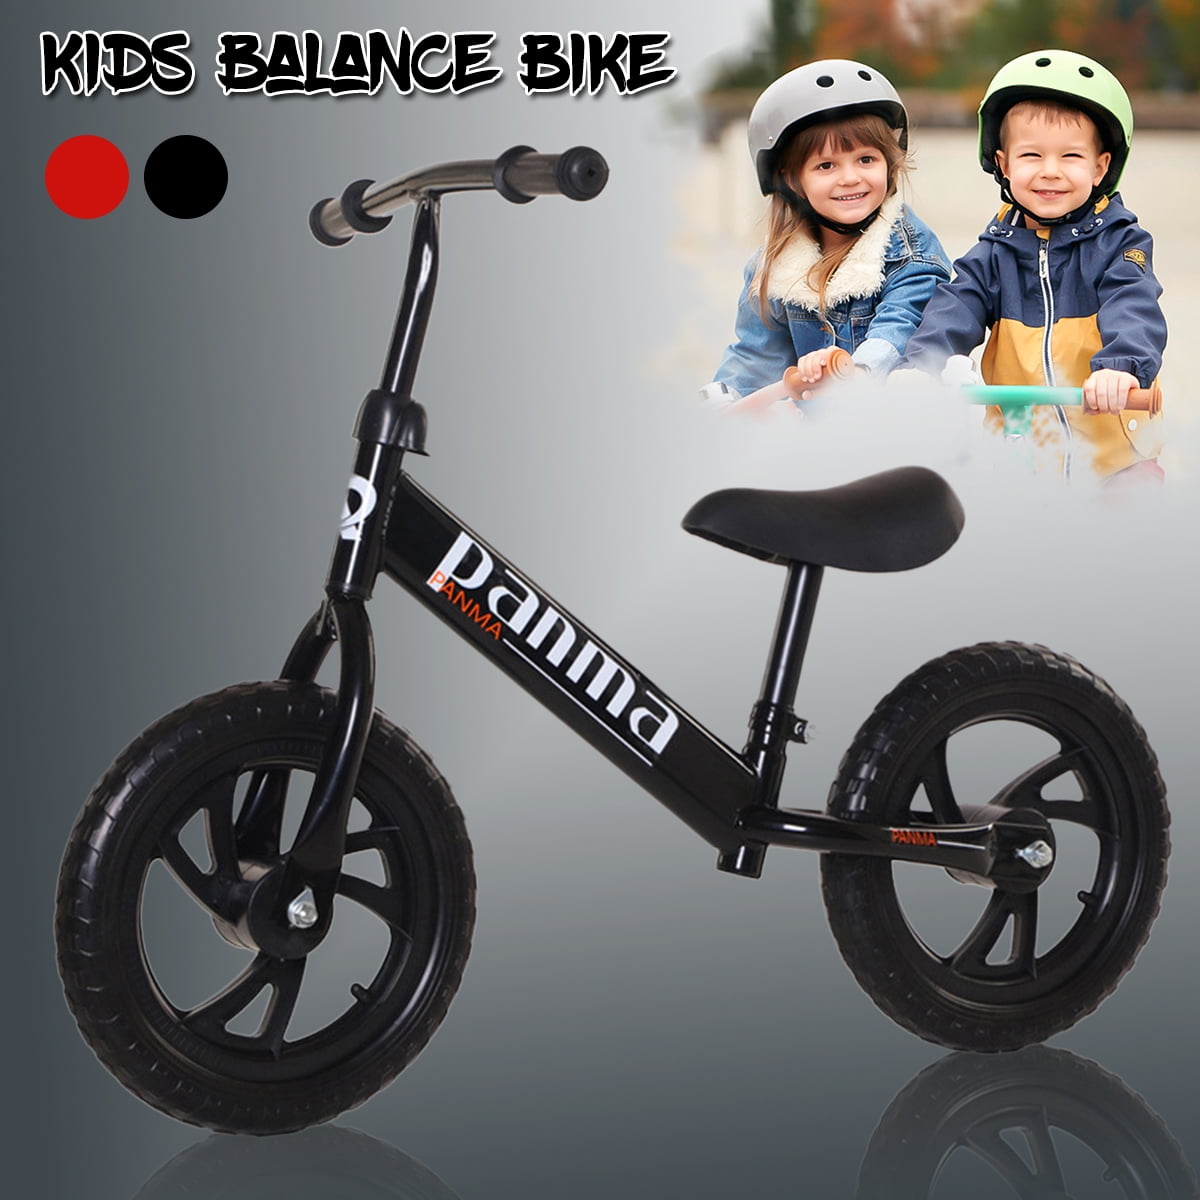 Kids Balance Bike Walking Balance Training Toddlers Children Bicycle Bike Black 